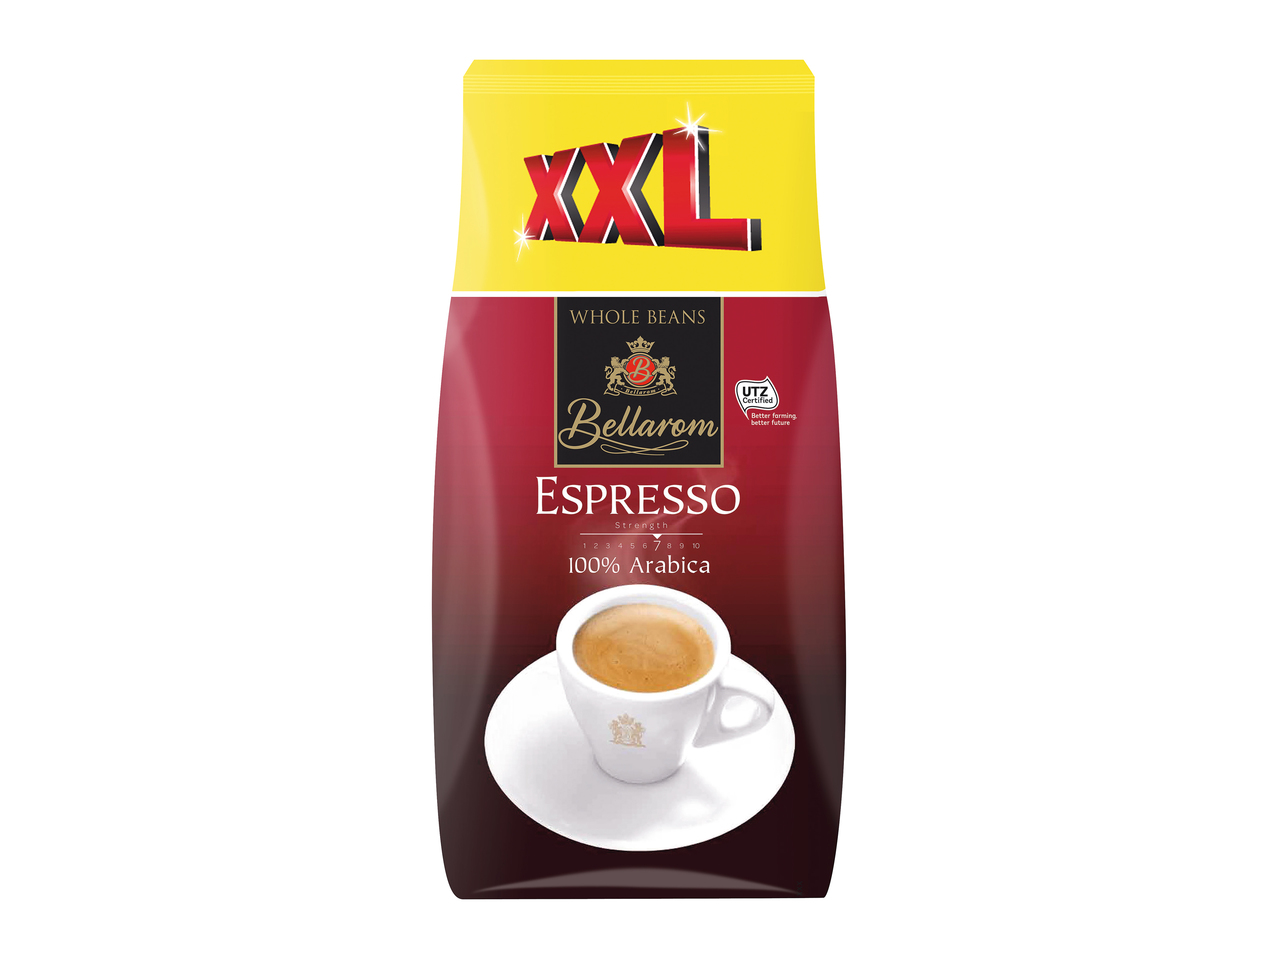 Caffè Espresso XXL